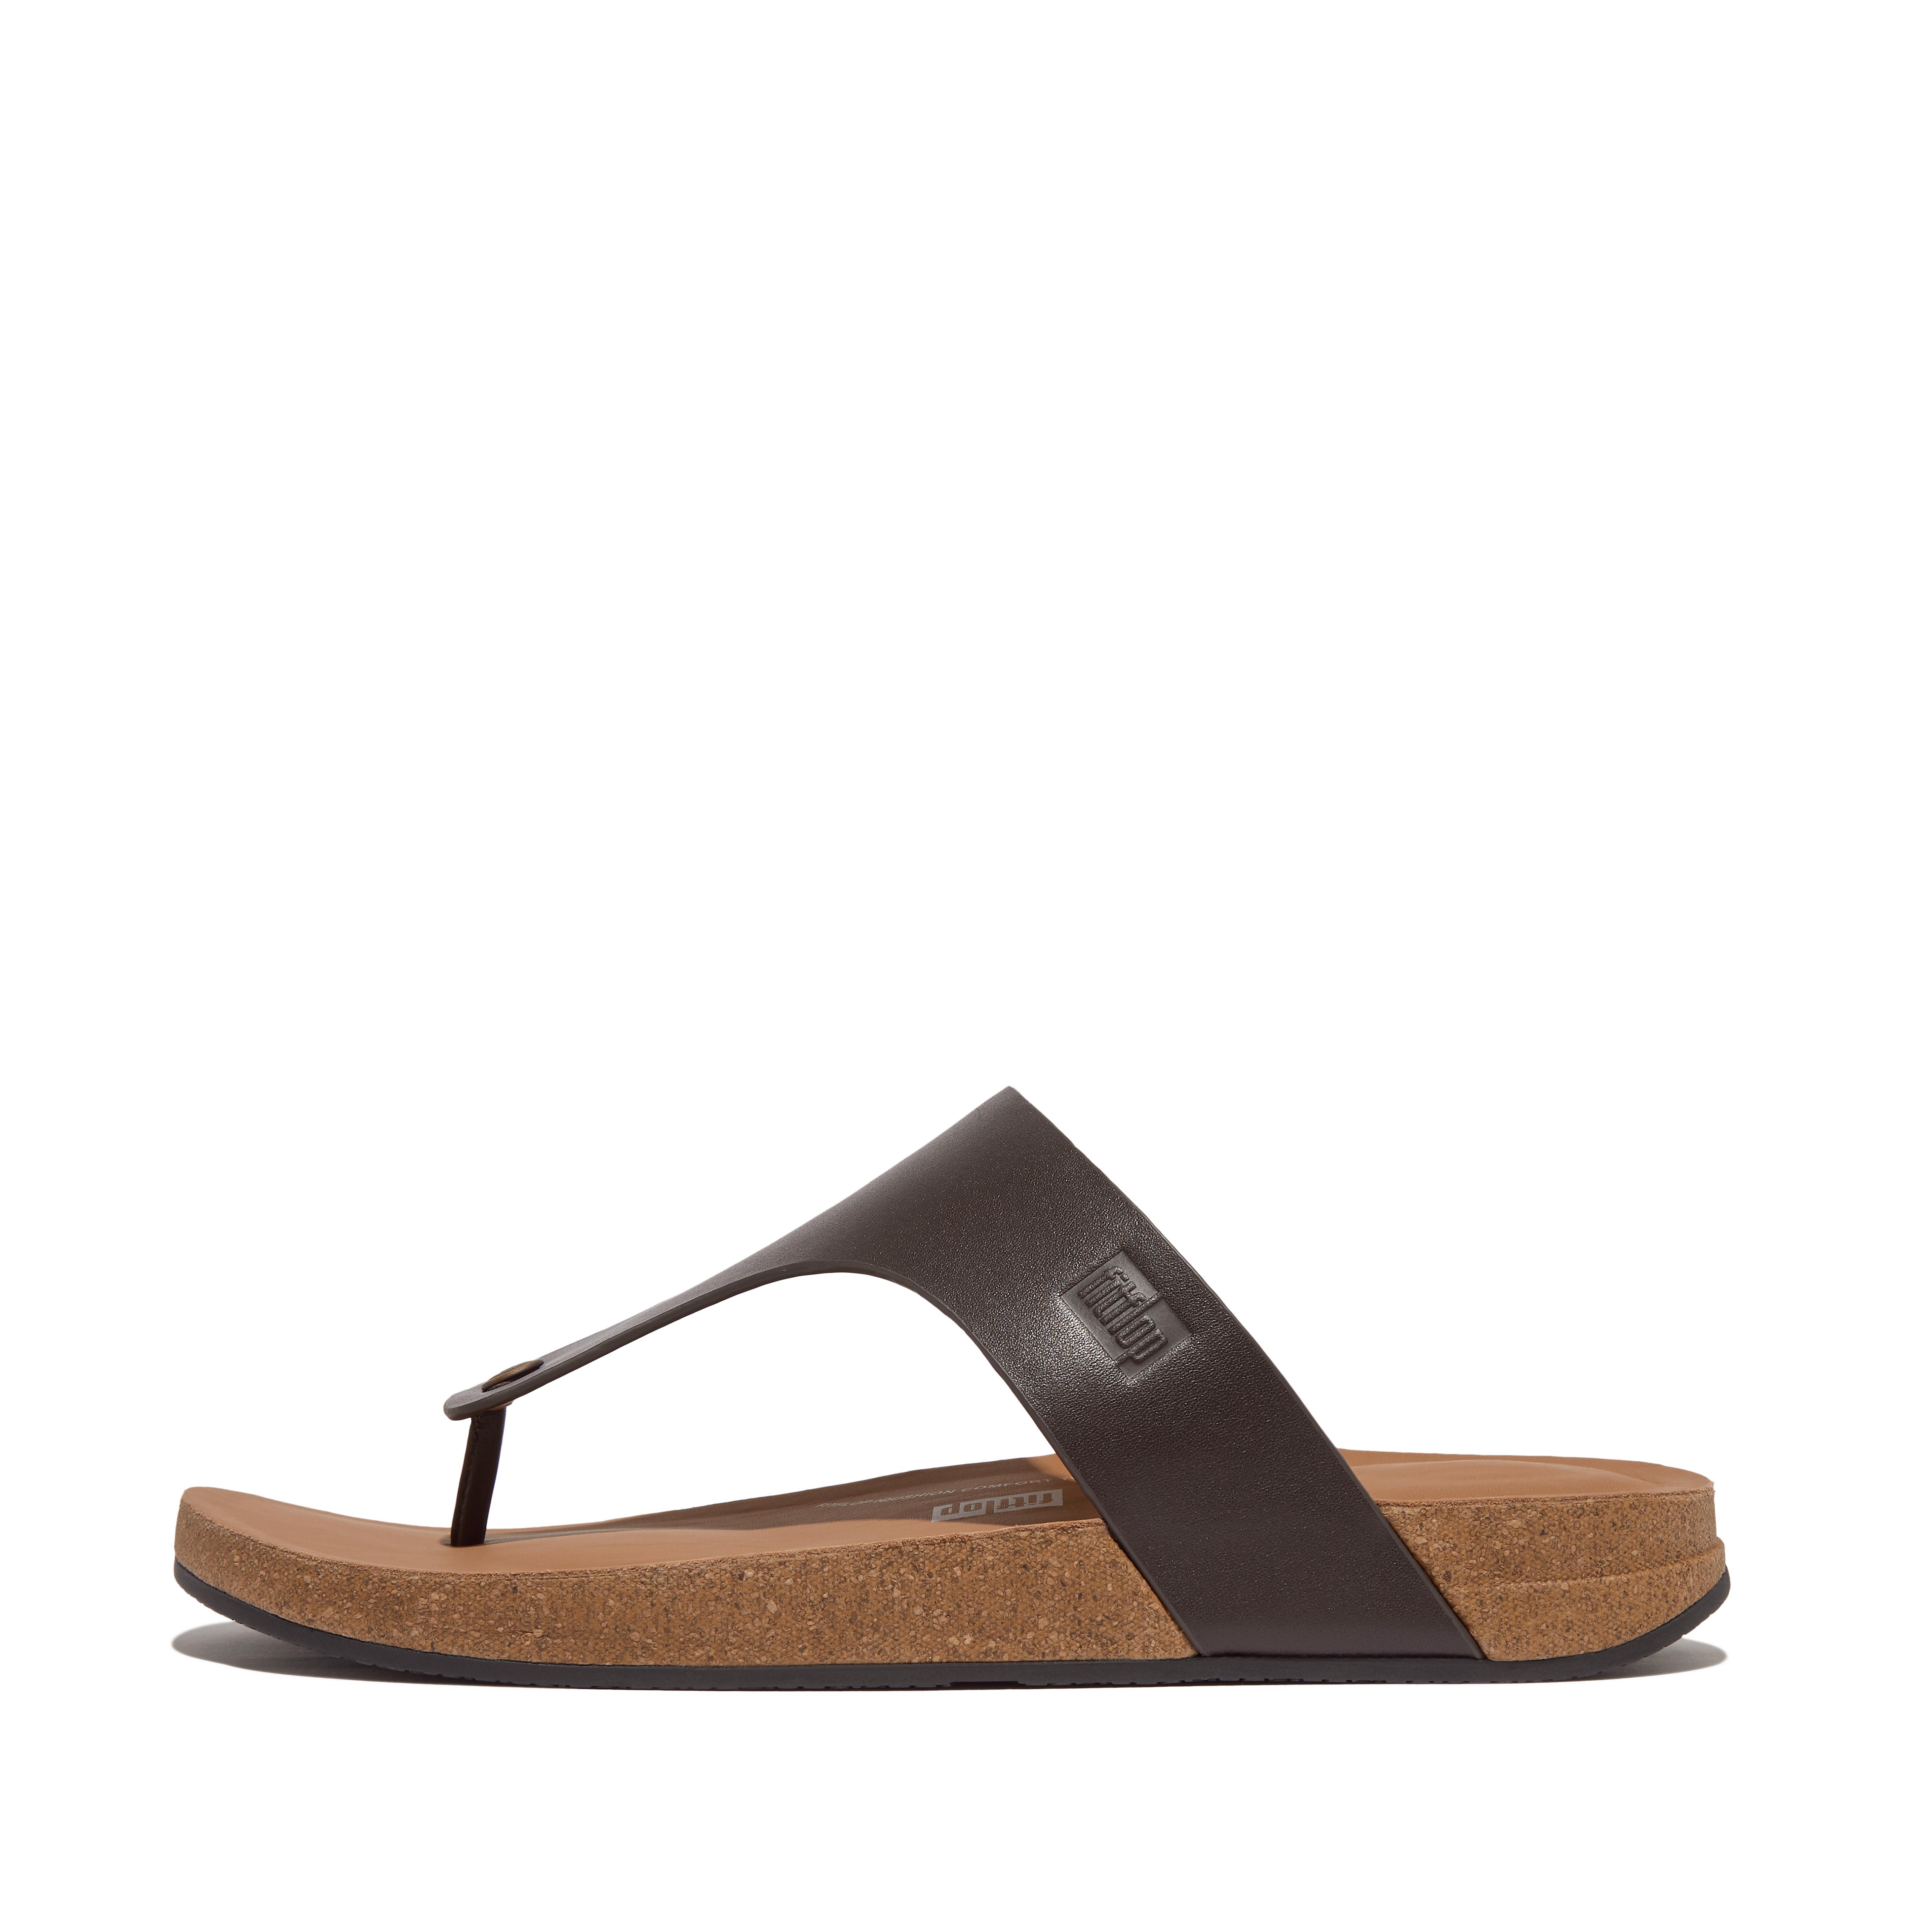 핏플랍 Fitflop Leather Toe-Post Sandals,Brown Mix